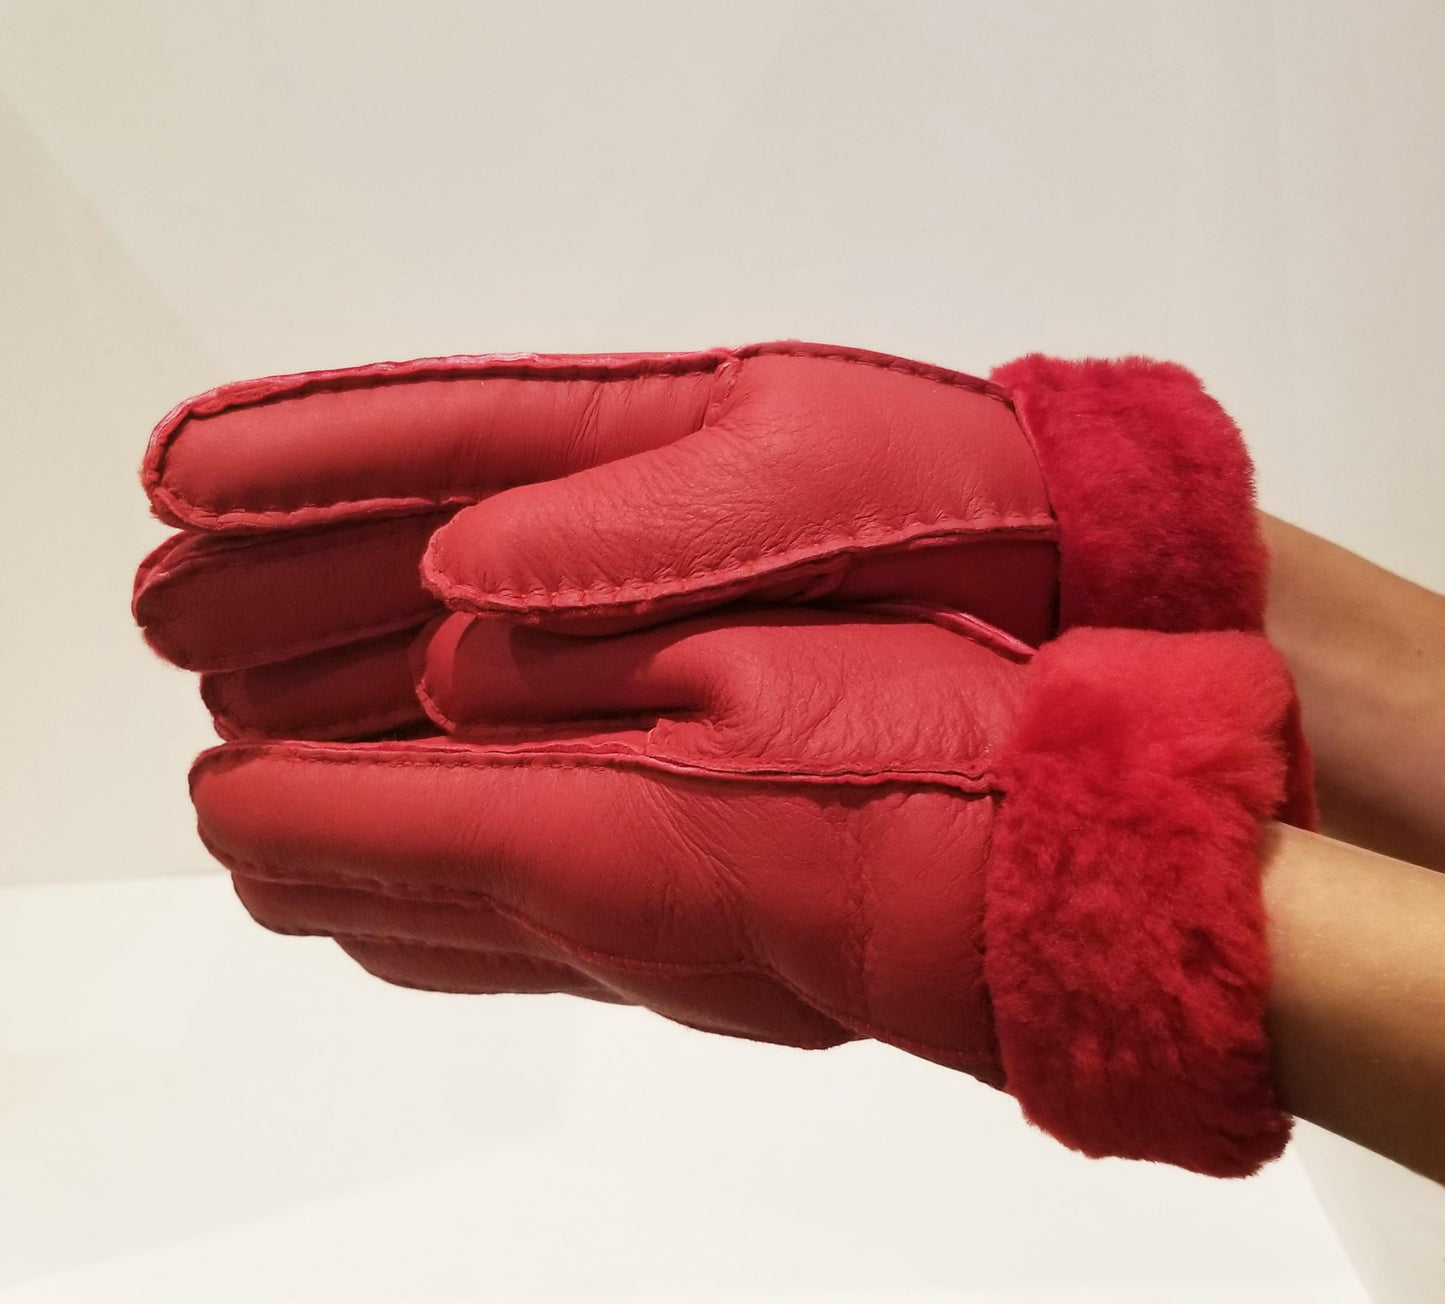 Red Sheepskin Gloves